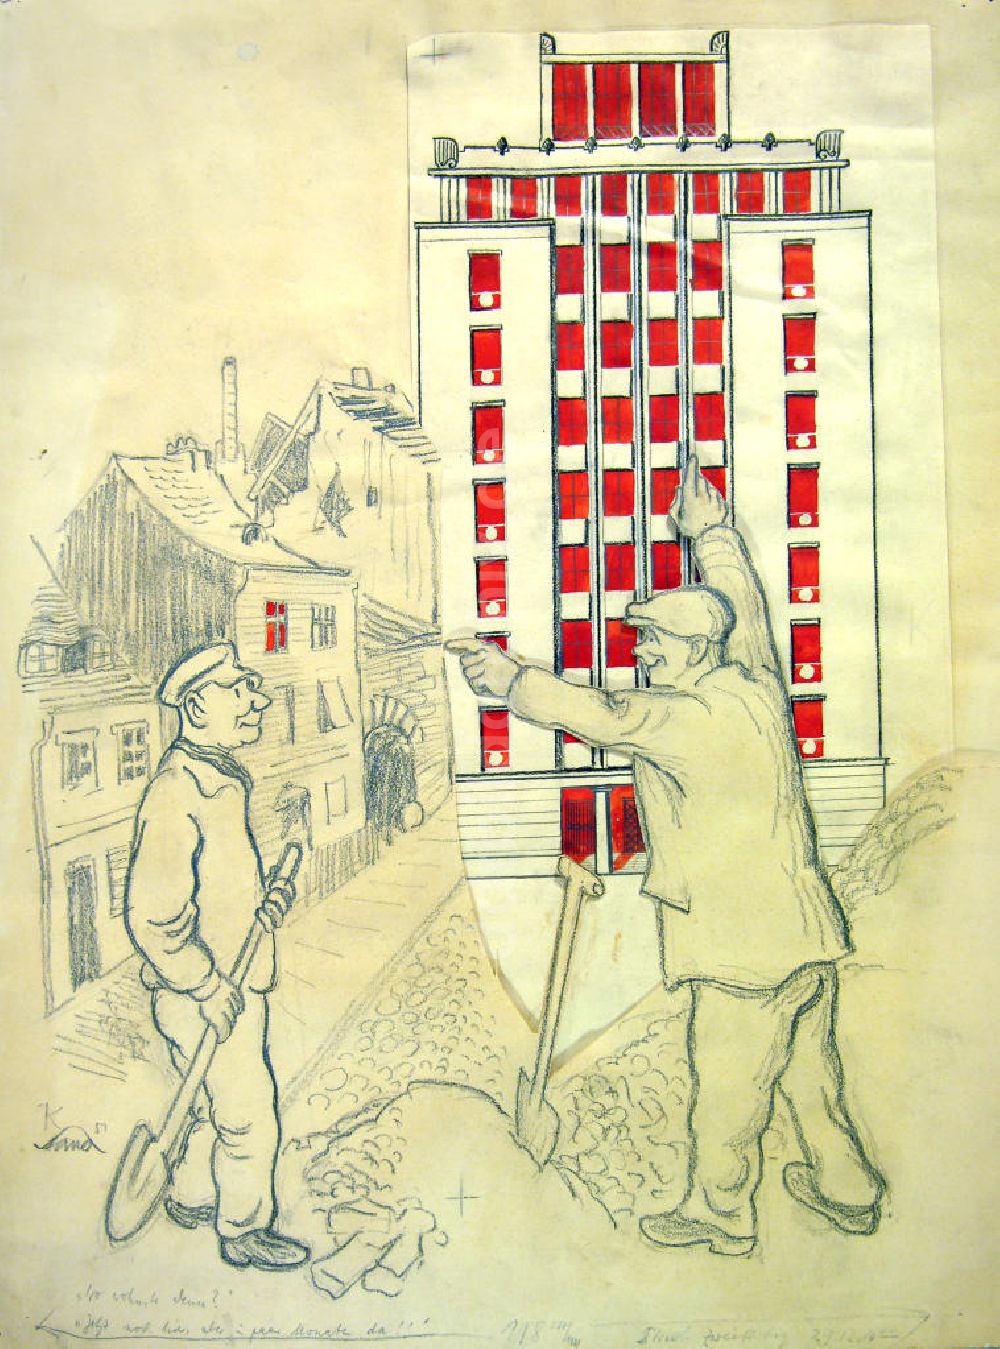 DDR-Fotoarchiv: Berlin - Zeichnung von Herbert Sandberg Weberwiese aus dem Jahr 1951